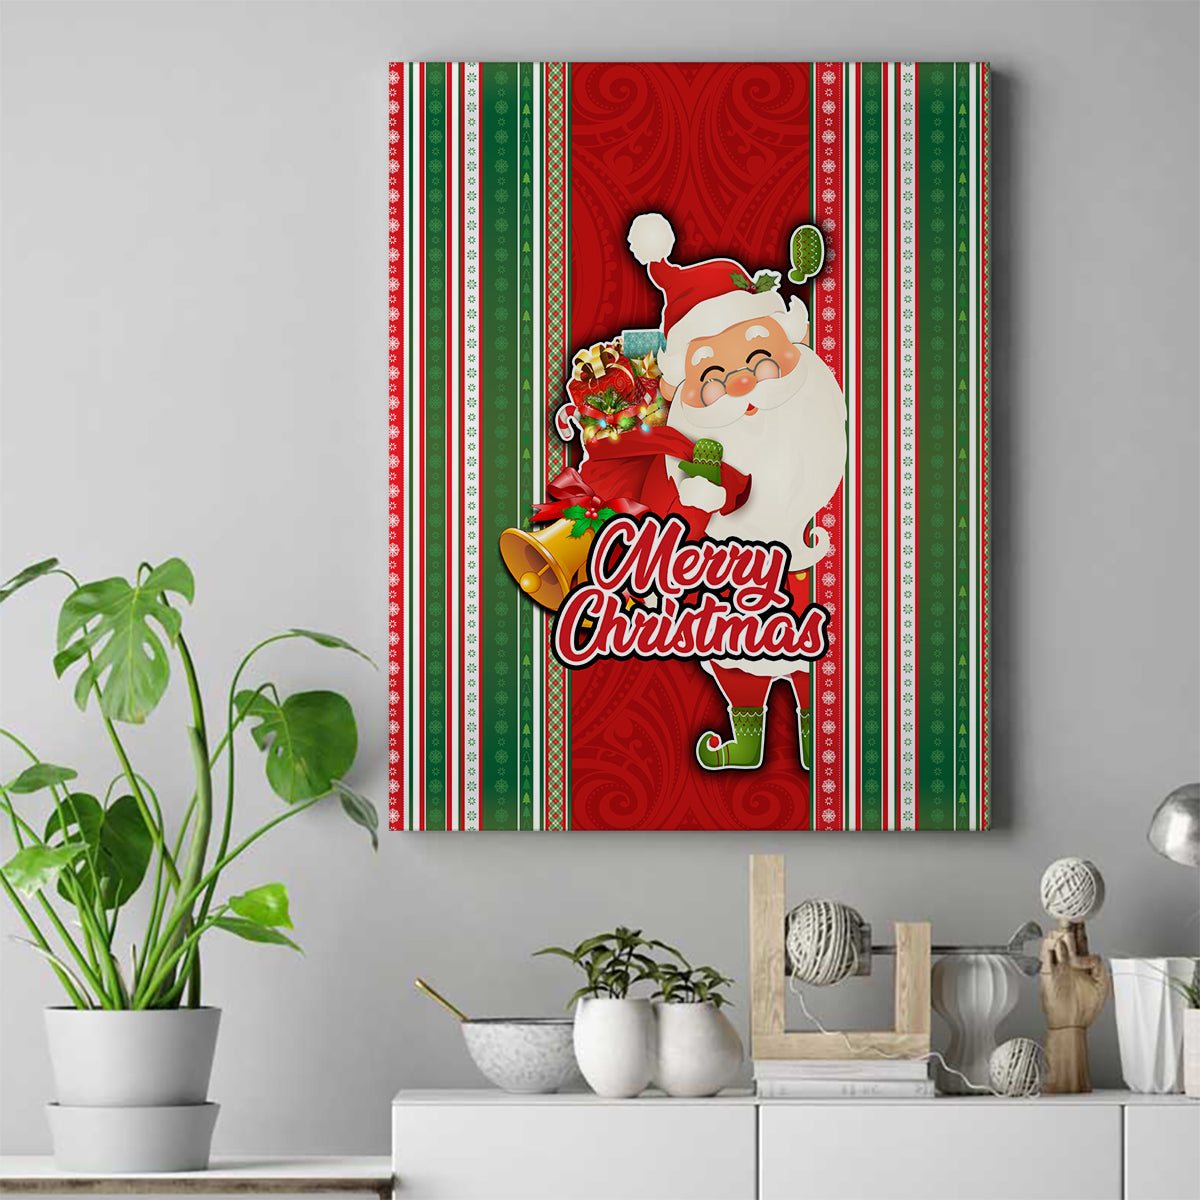 Kiribati Christmas Canvas Wall Art Santa With Gift Bag Behind Ribbons Seamless Red Maori LT03 Red - Polynesian Pride